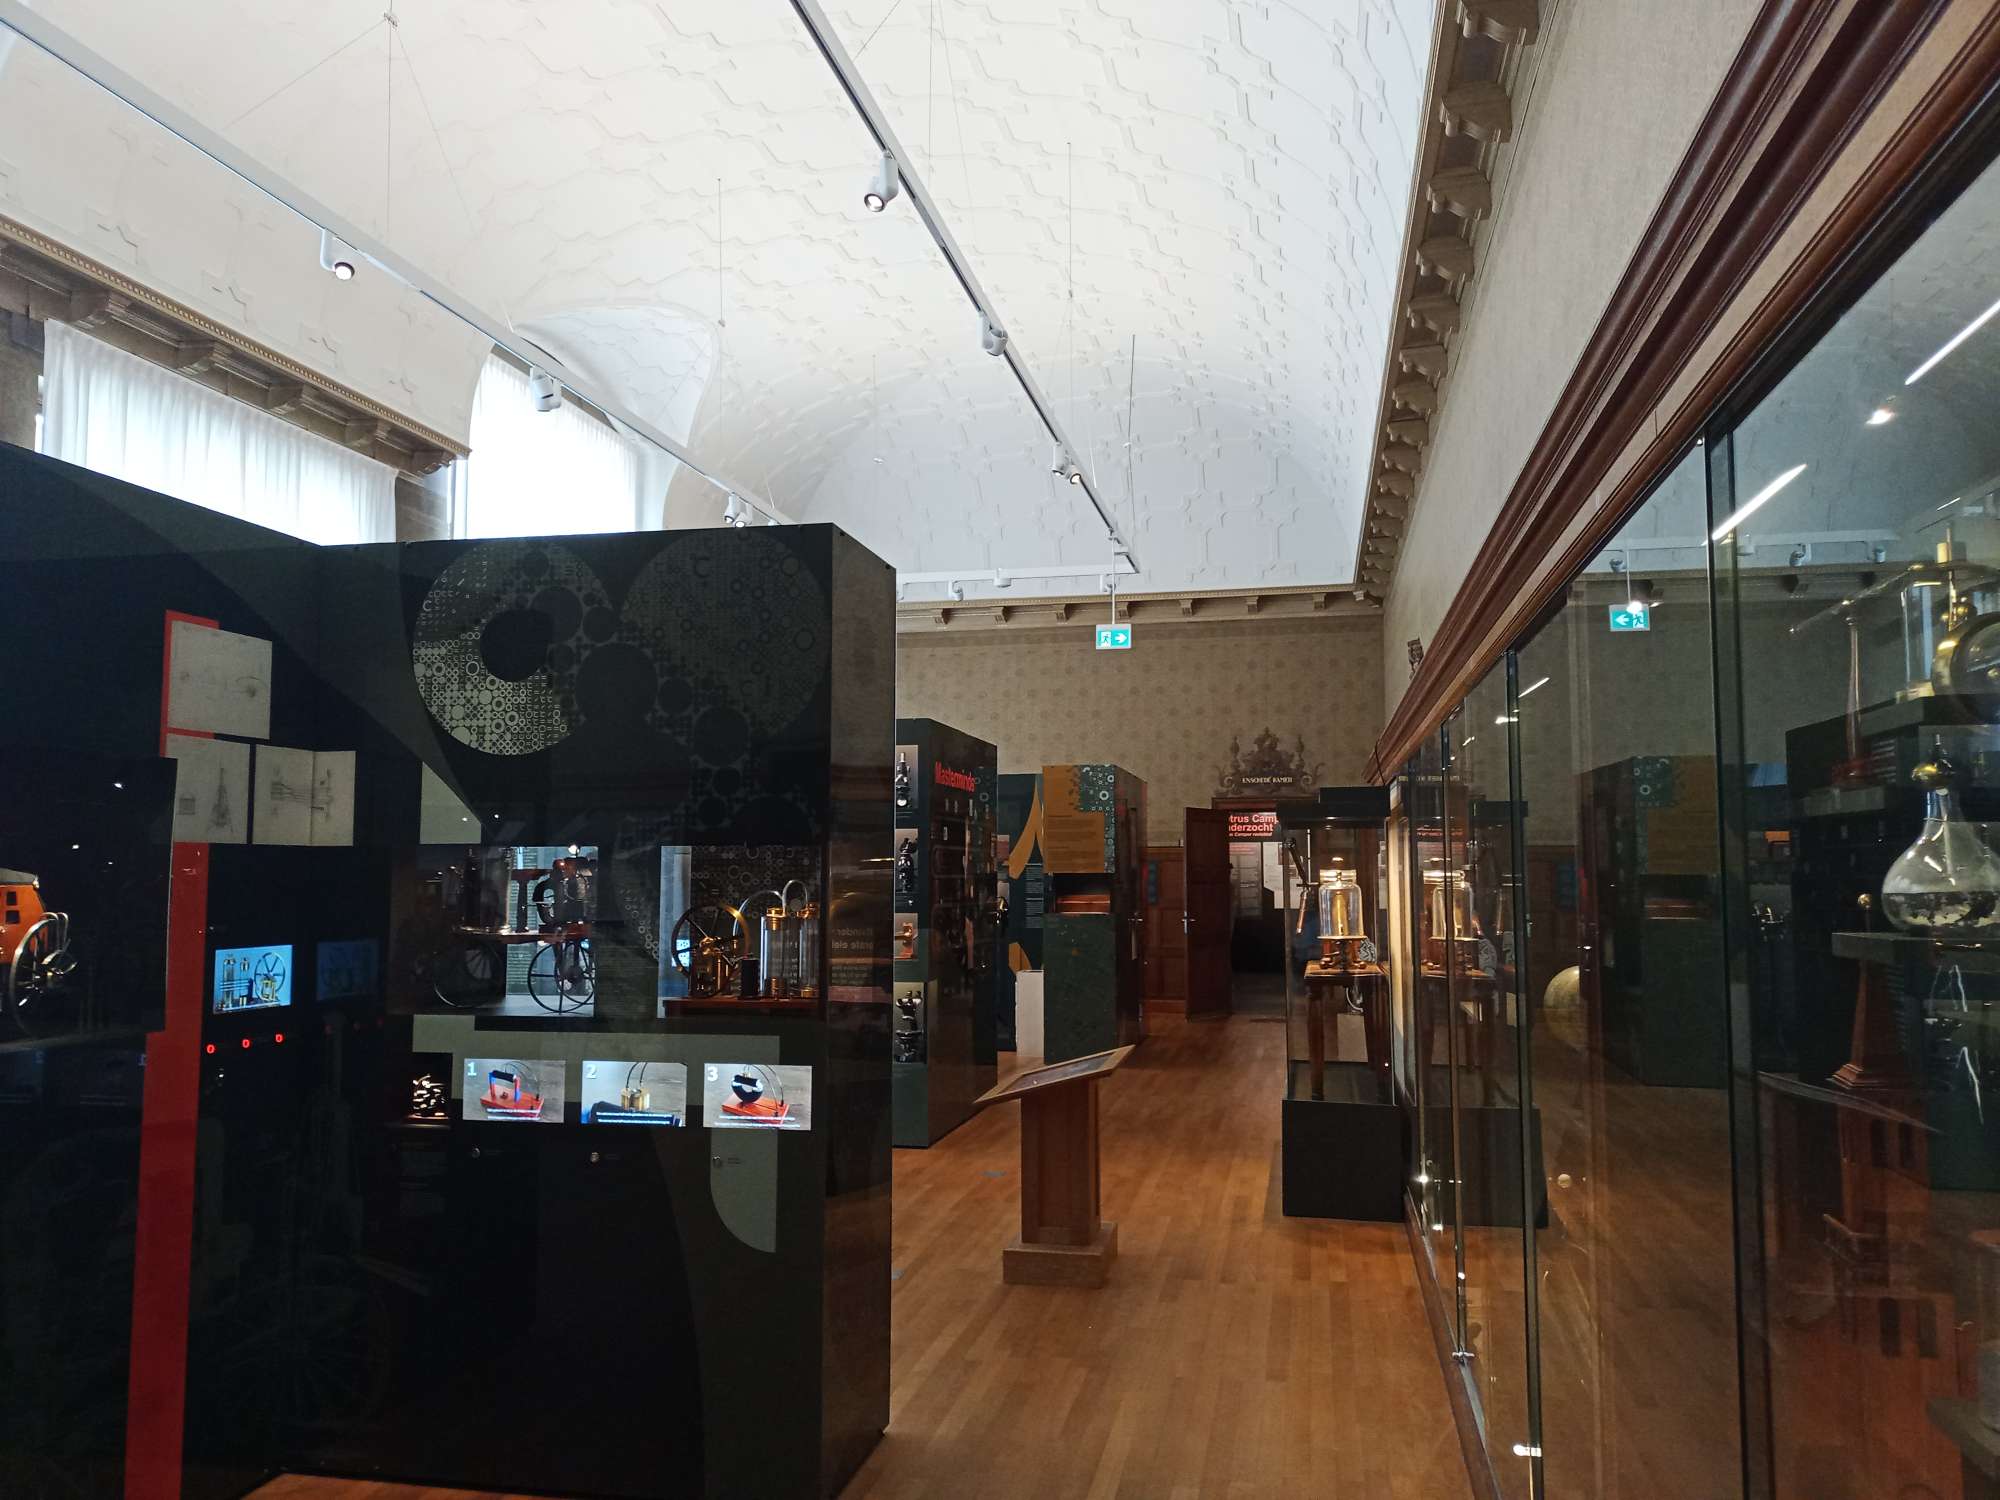 De zaal boven in het Universiteitsmuseum, rechts zijn glazen vitrines, links zijn verschillende objecten te zien in vitrines. Het plafond is wit. In de vitrines links zijn ook nog bewegende beelden.